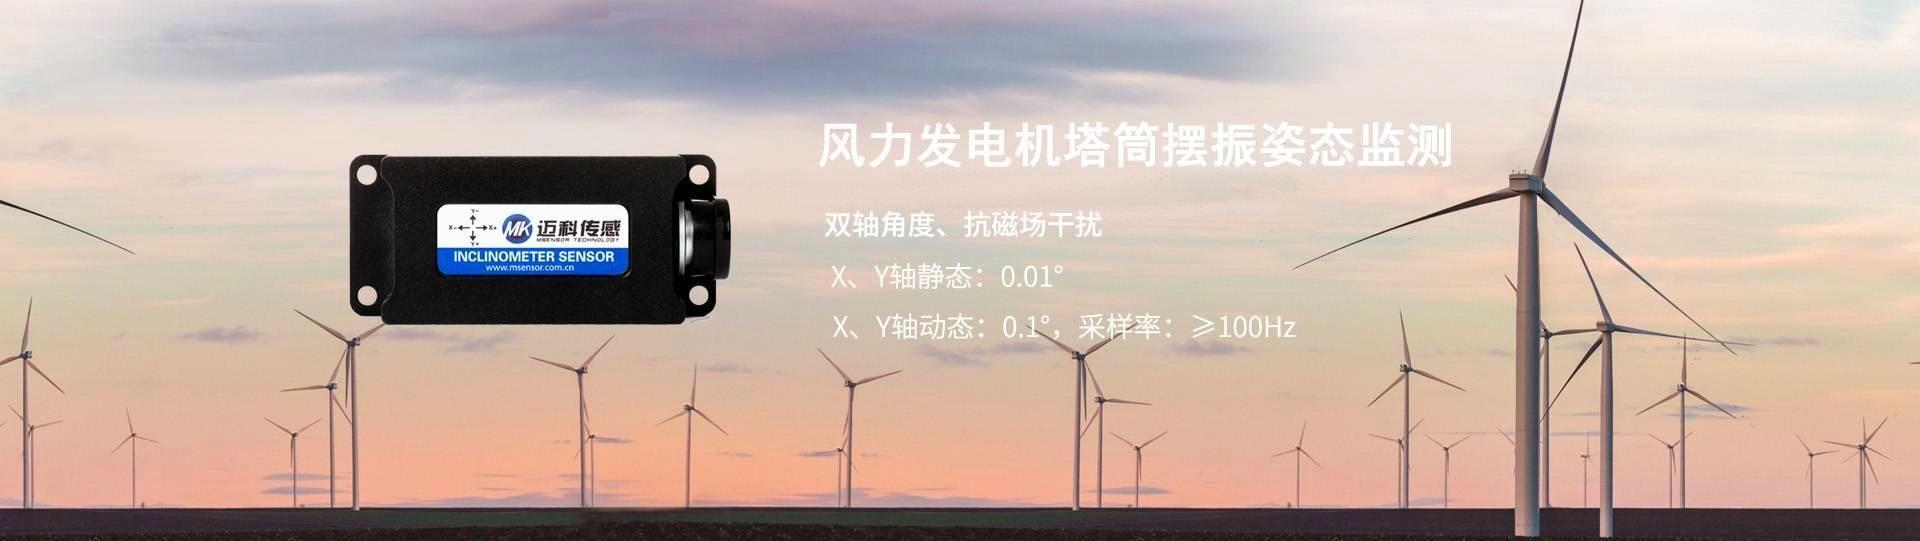 风力发电机塔筒摆振-无锡J9九游会传感科技有限公司